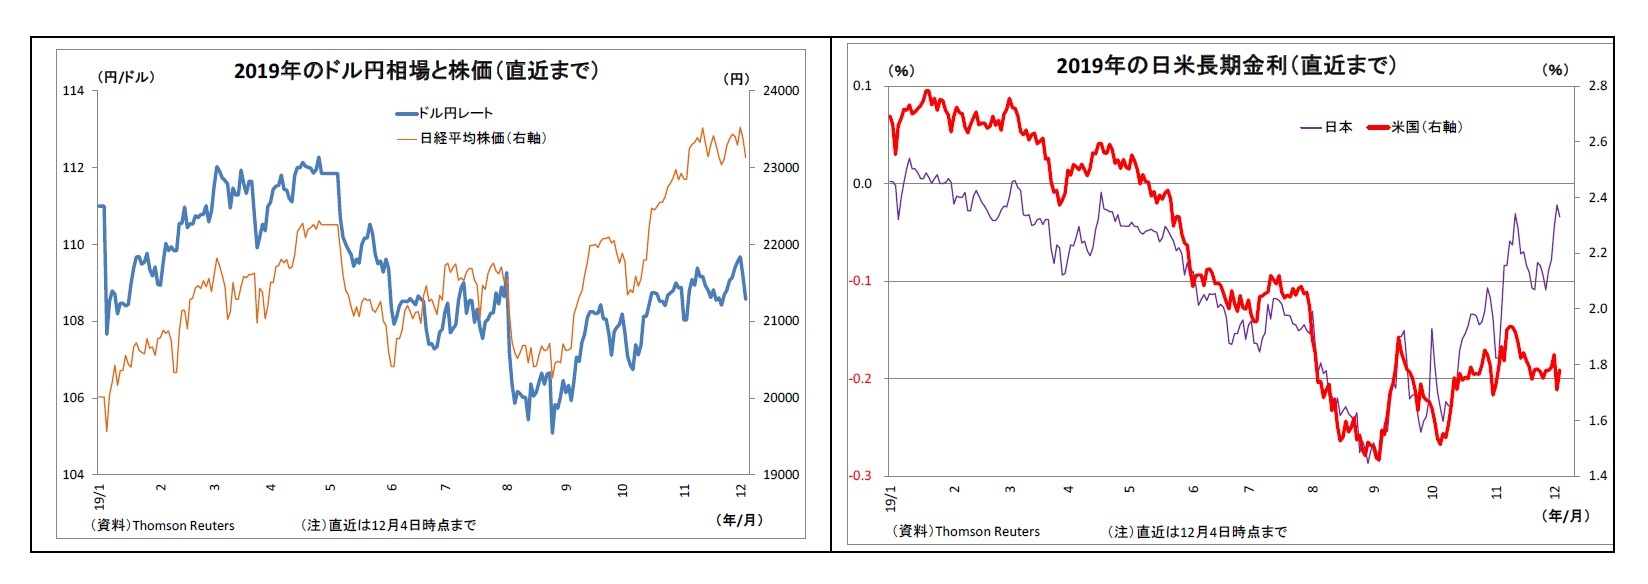 2019年のドル円相場と株価（直近まで）/2019年の日米長期金利（直近まで）